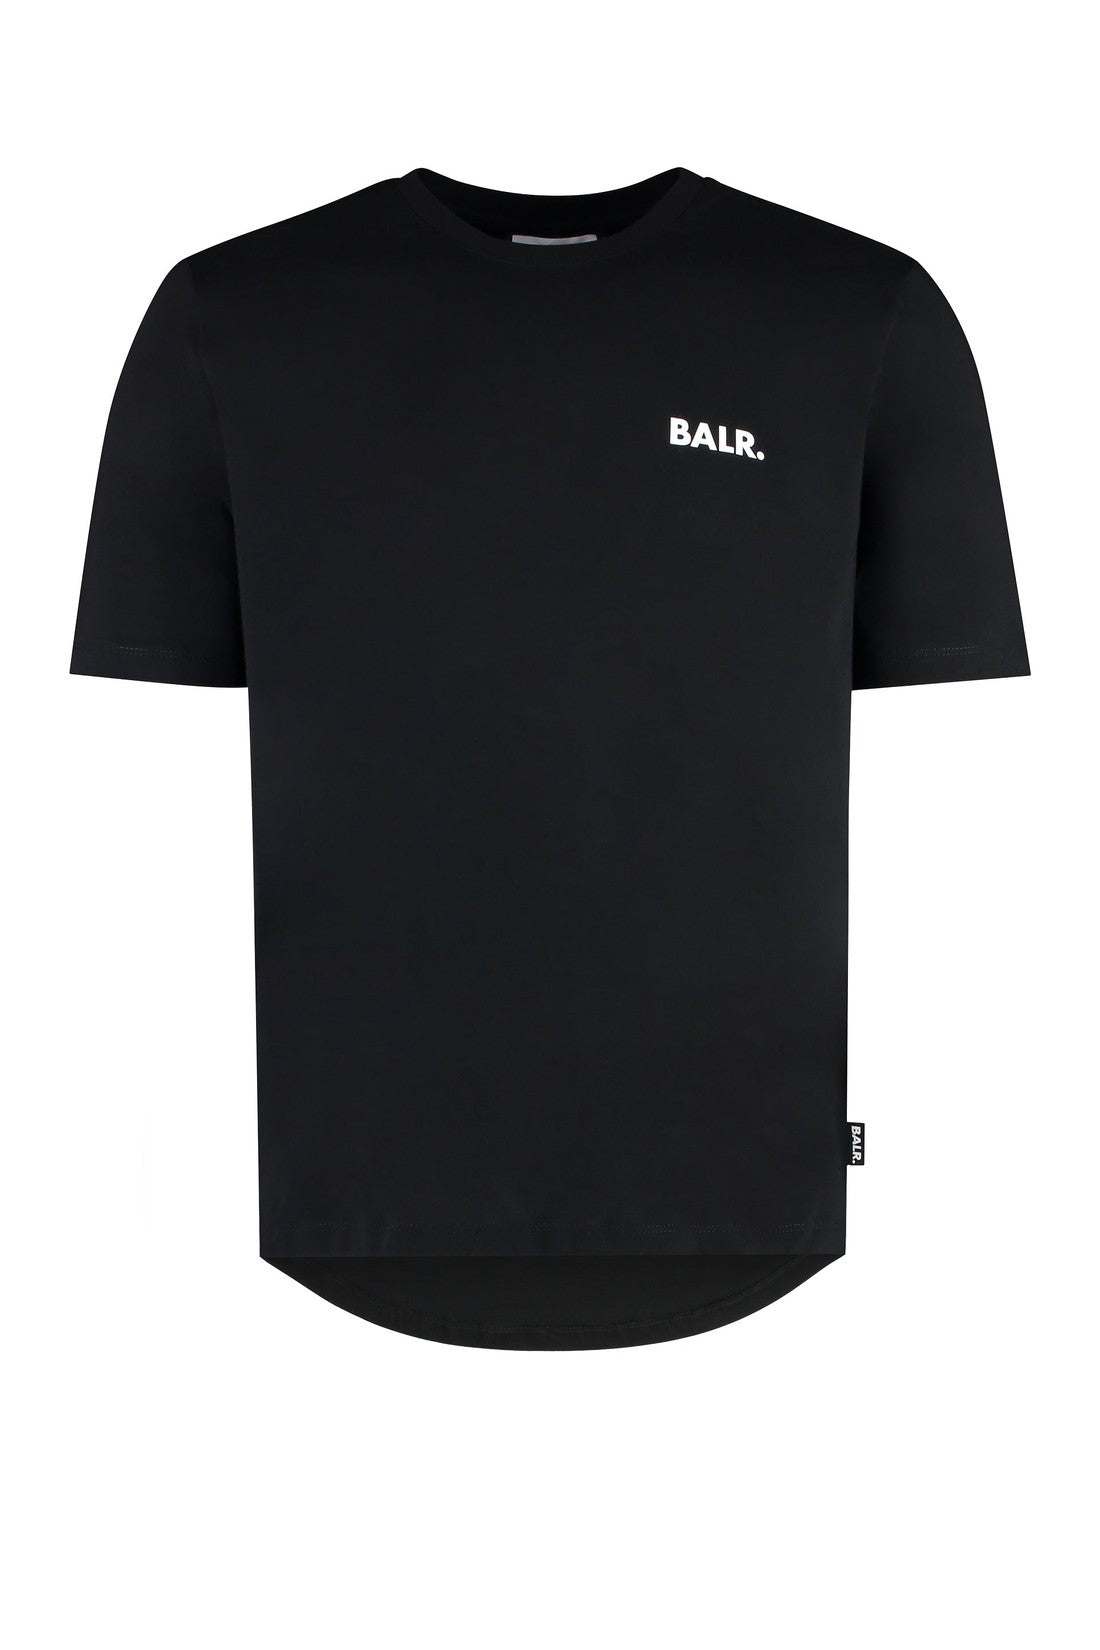 BALR.-OUTLET-SALE-Cotton crew-neck T-shirt-ARCHIVIST